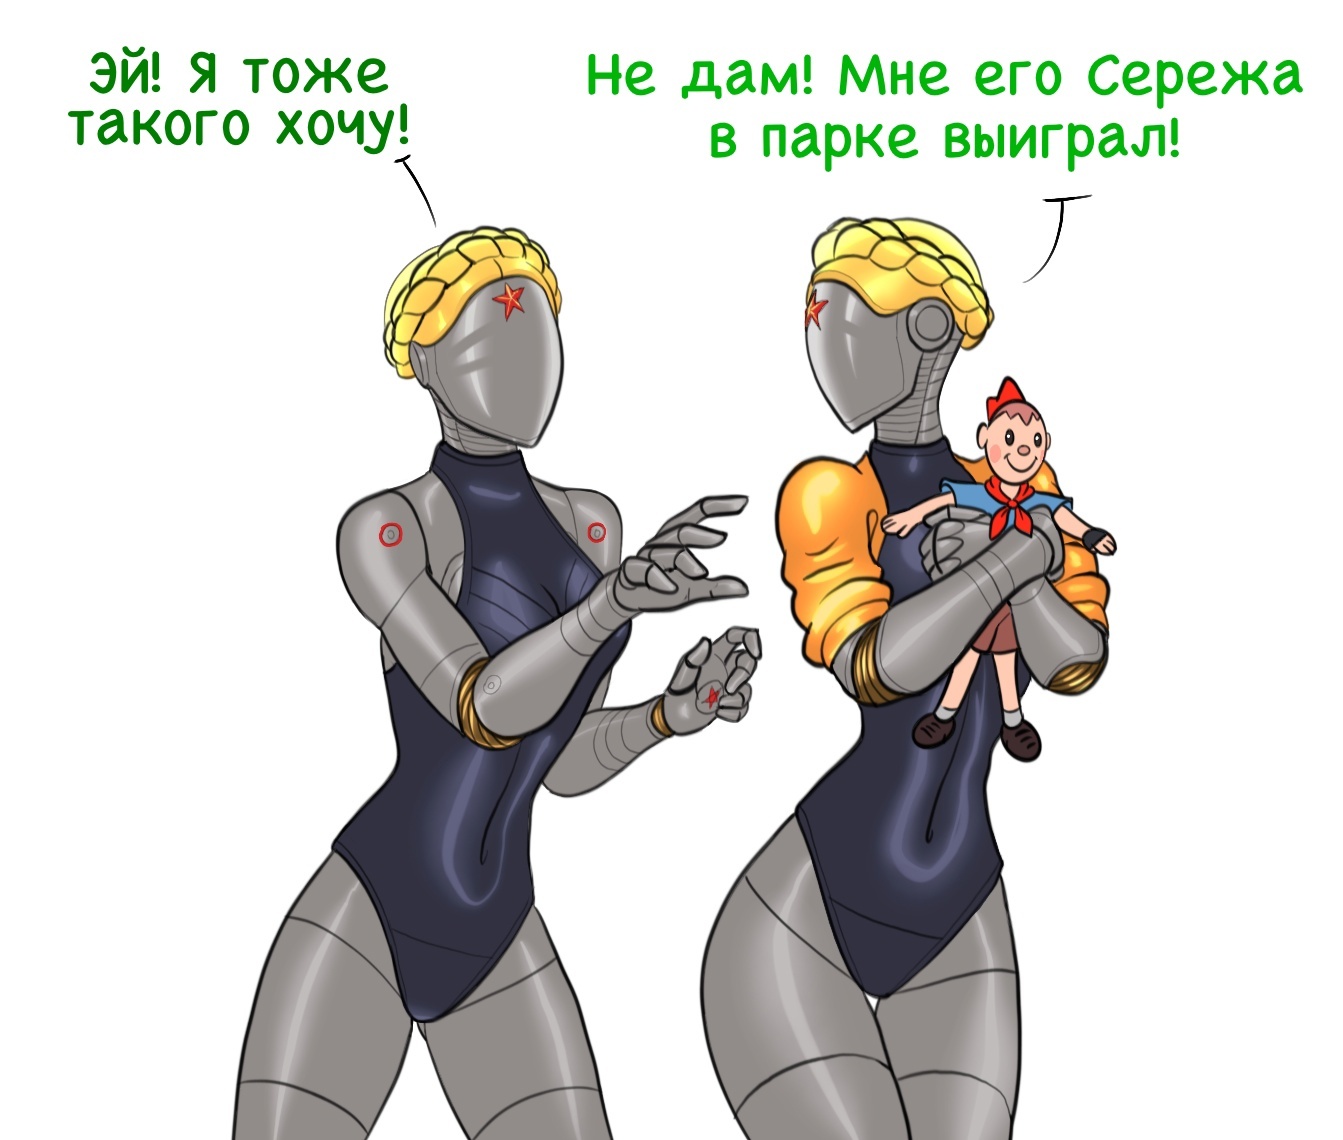 Главные мемы 2023 года: атомный советпанк, русы с ящерами, барбенгеймер и гусь-матерщинник - 6